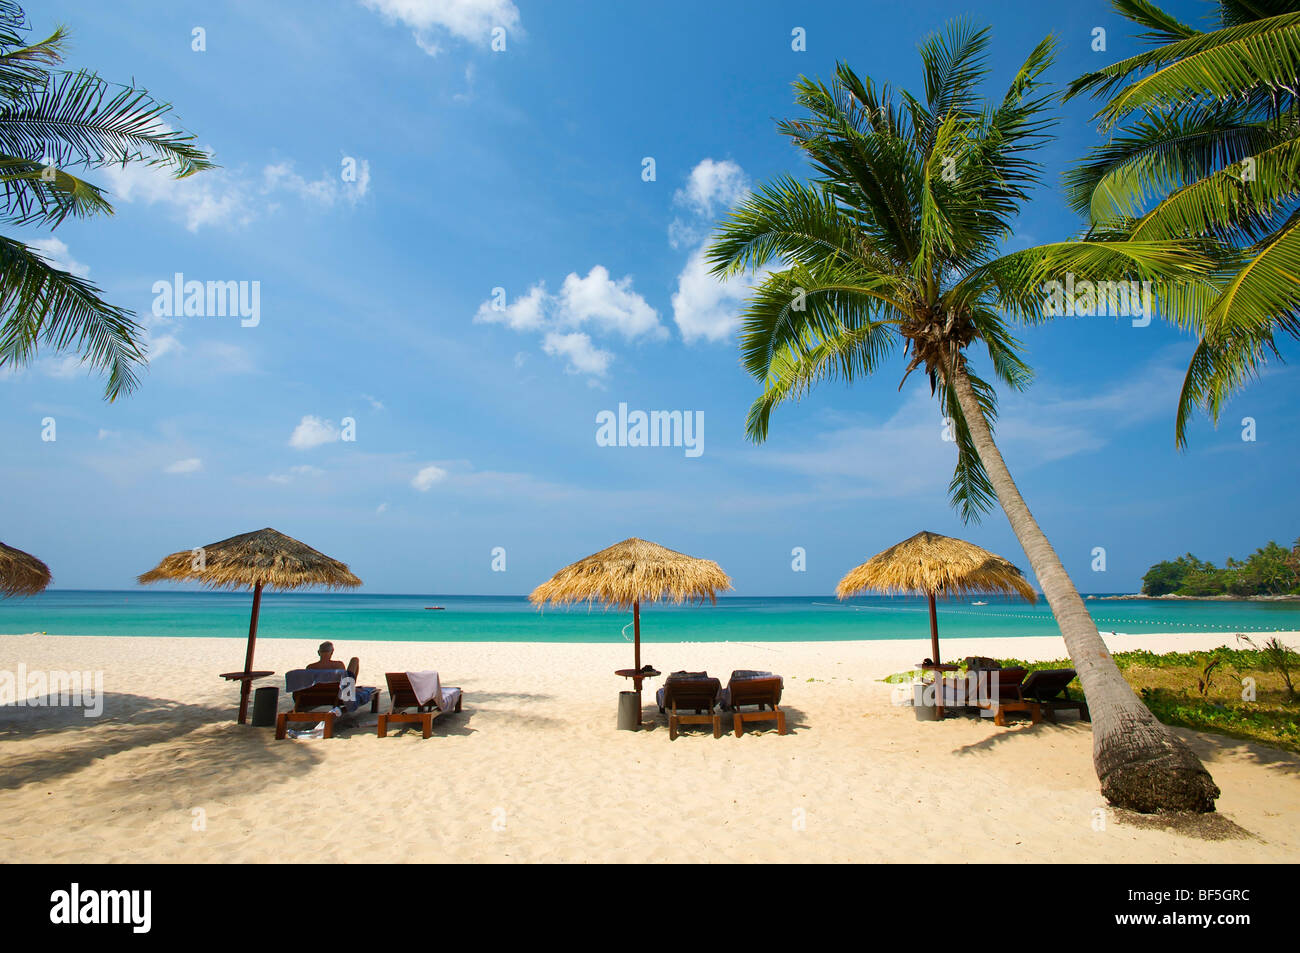 Pansea Beach, Phuket Island, Thailand, Asia Stock Photo